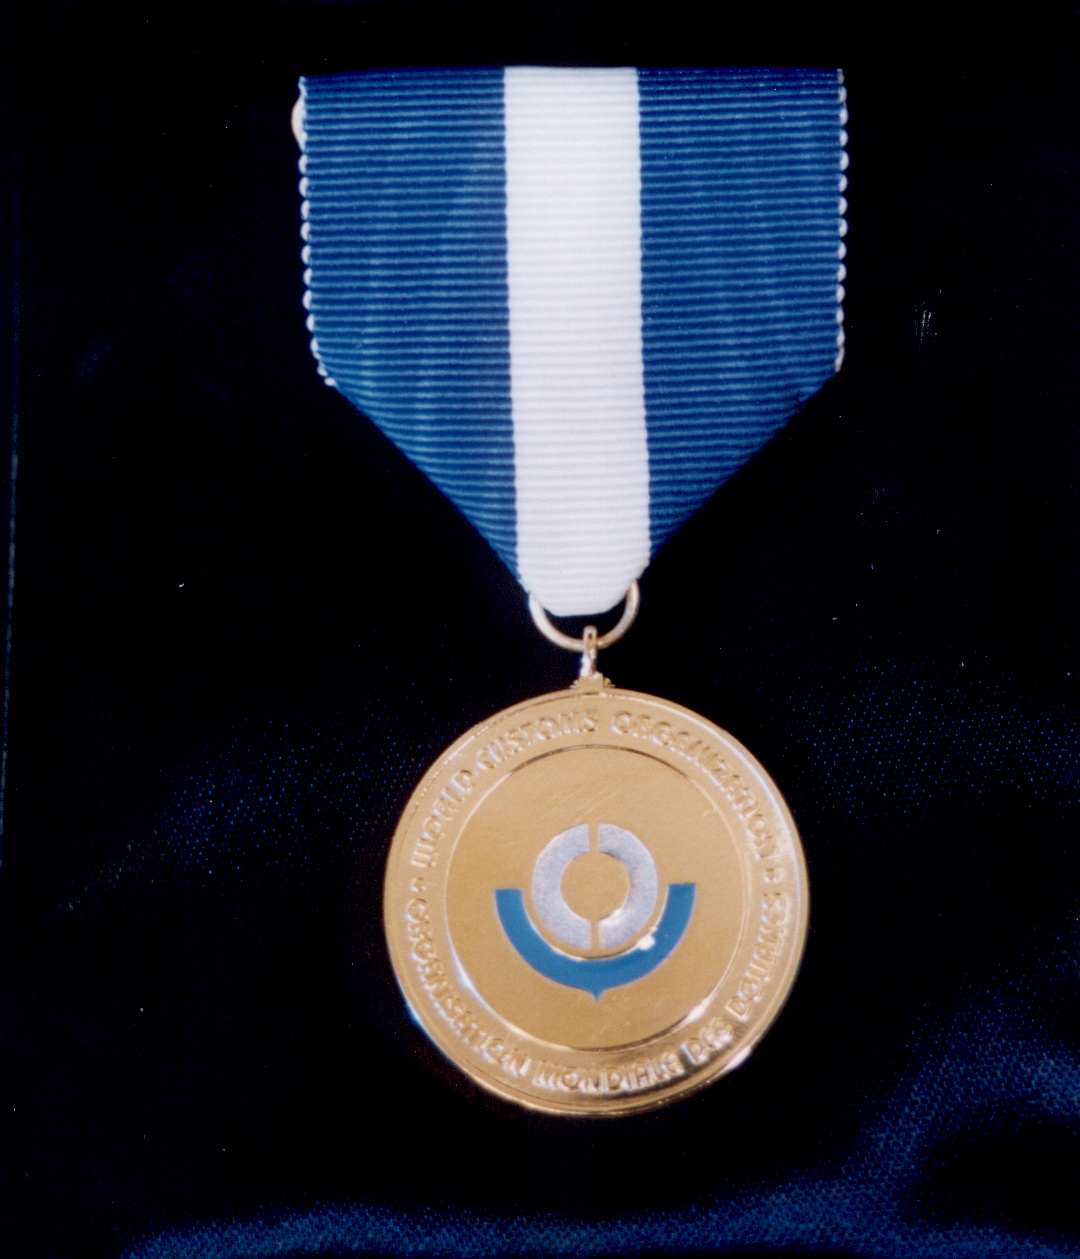 WCO Medal of Honour